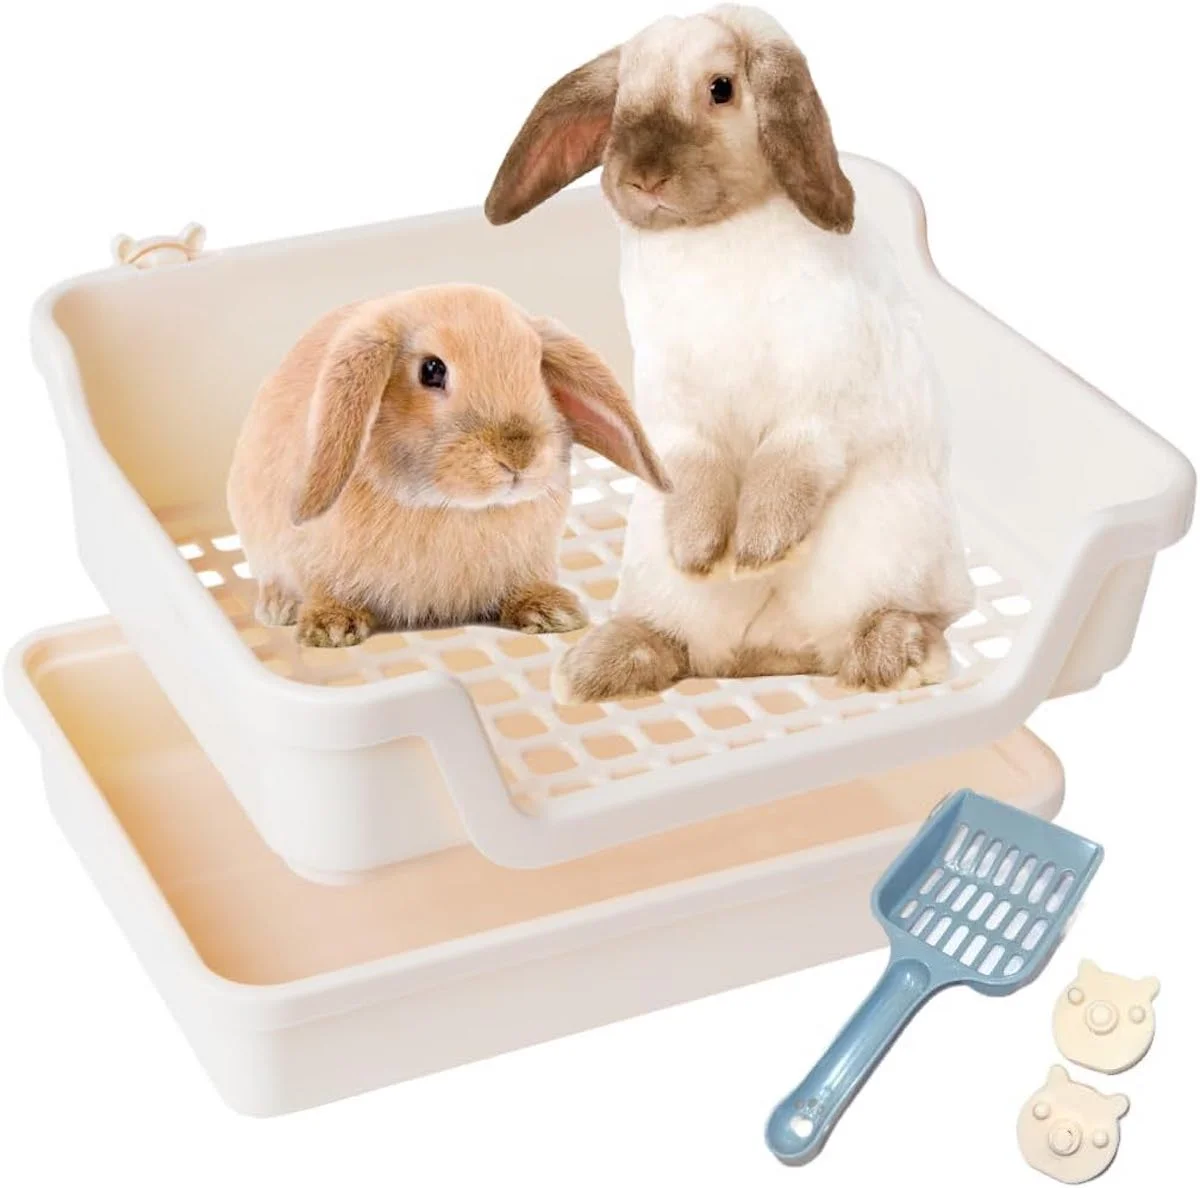 HoppScotch.bun litter box with two bunnies